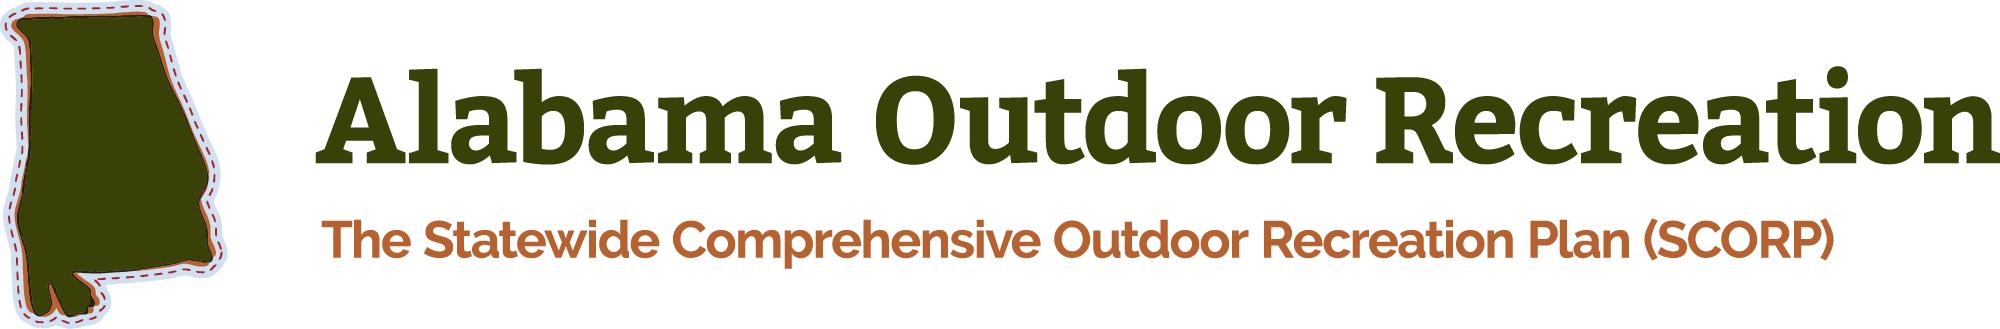 Alabama Outdoor Recreation Logo